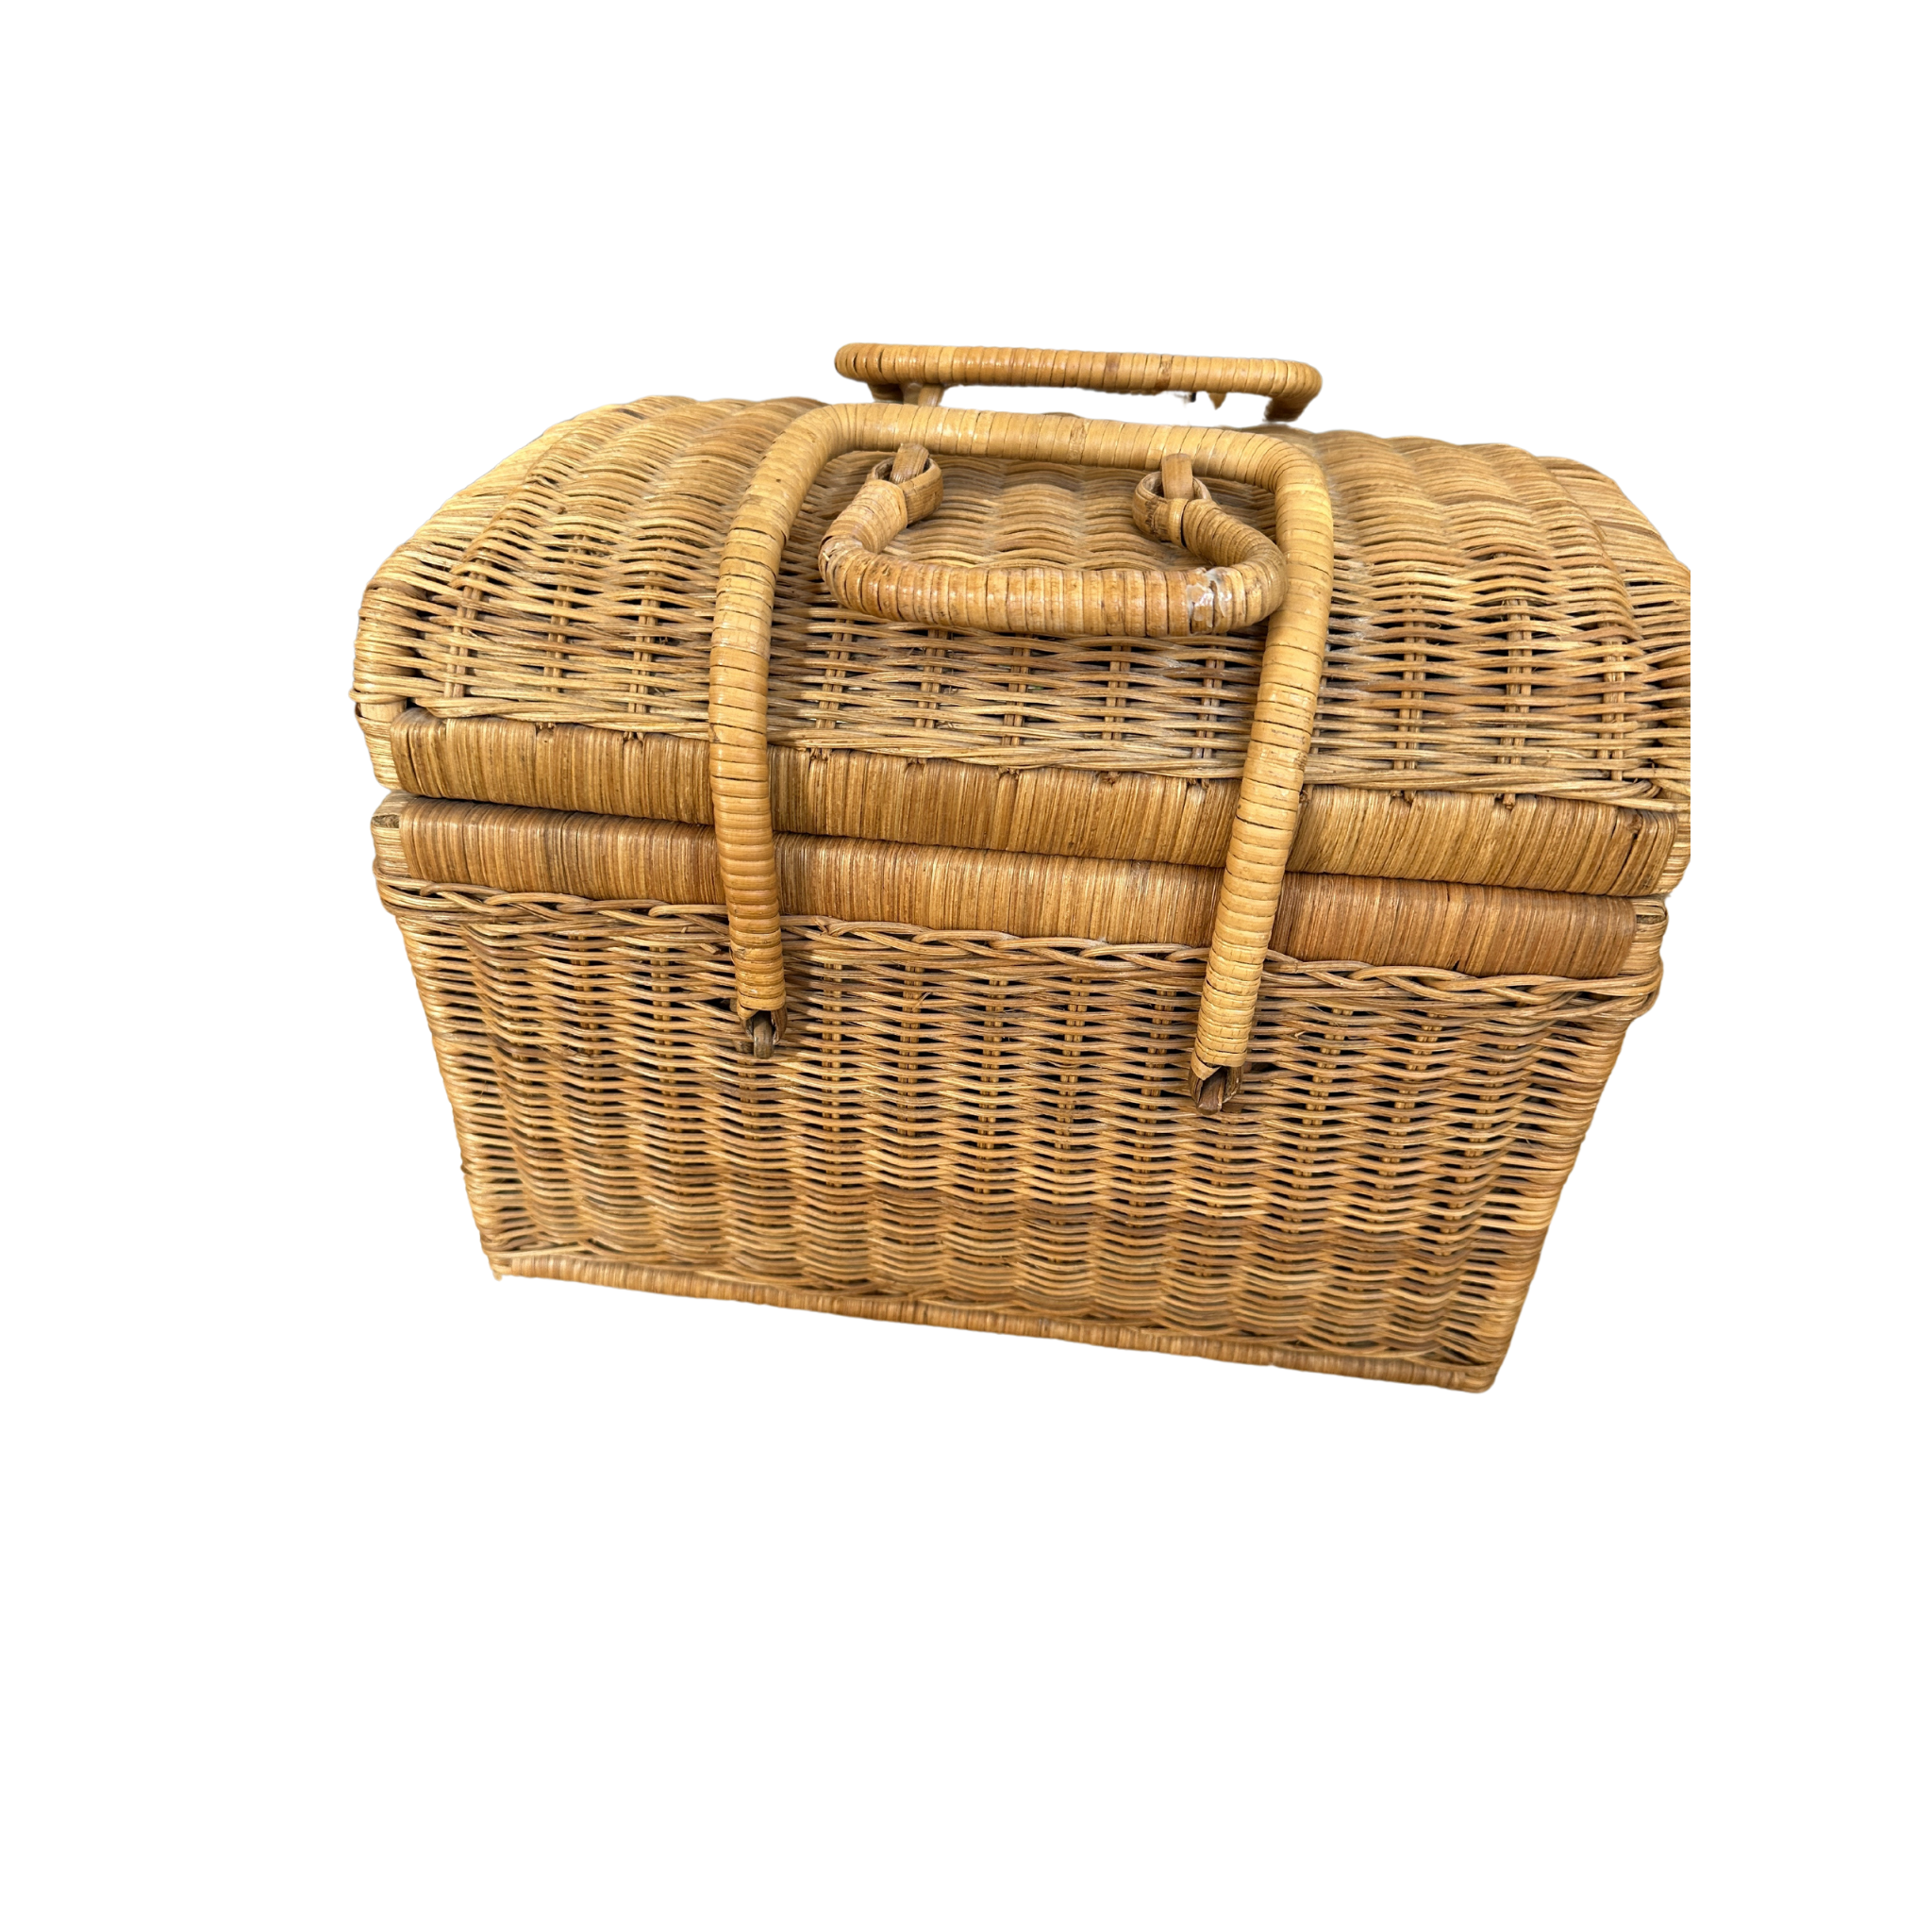 Vintage Rattan Looking Handle Basket